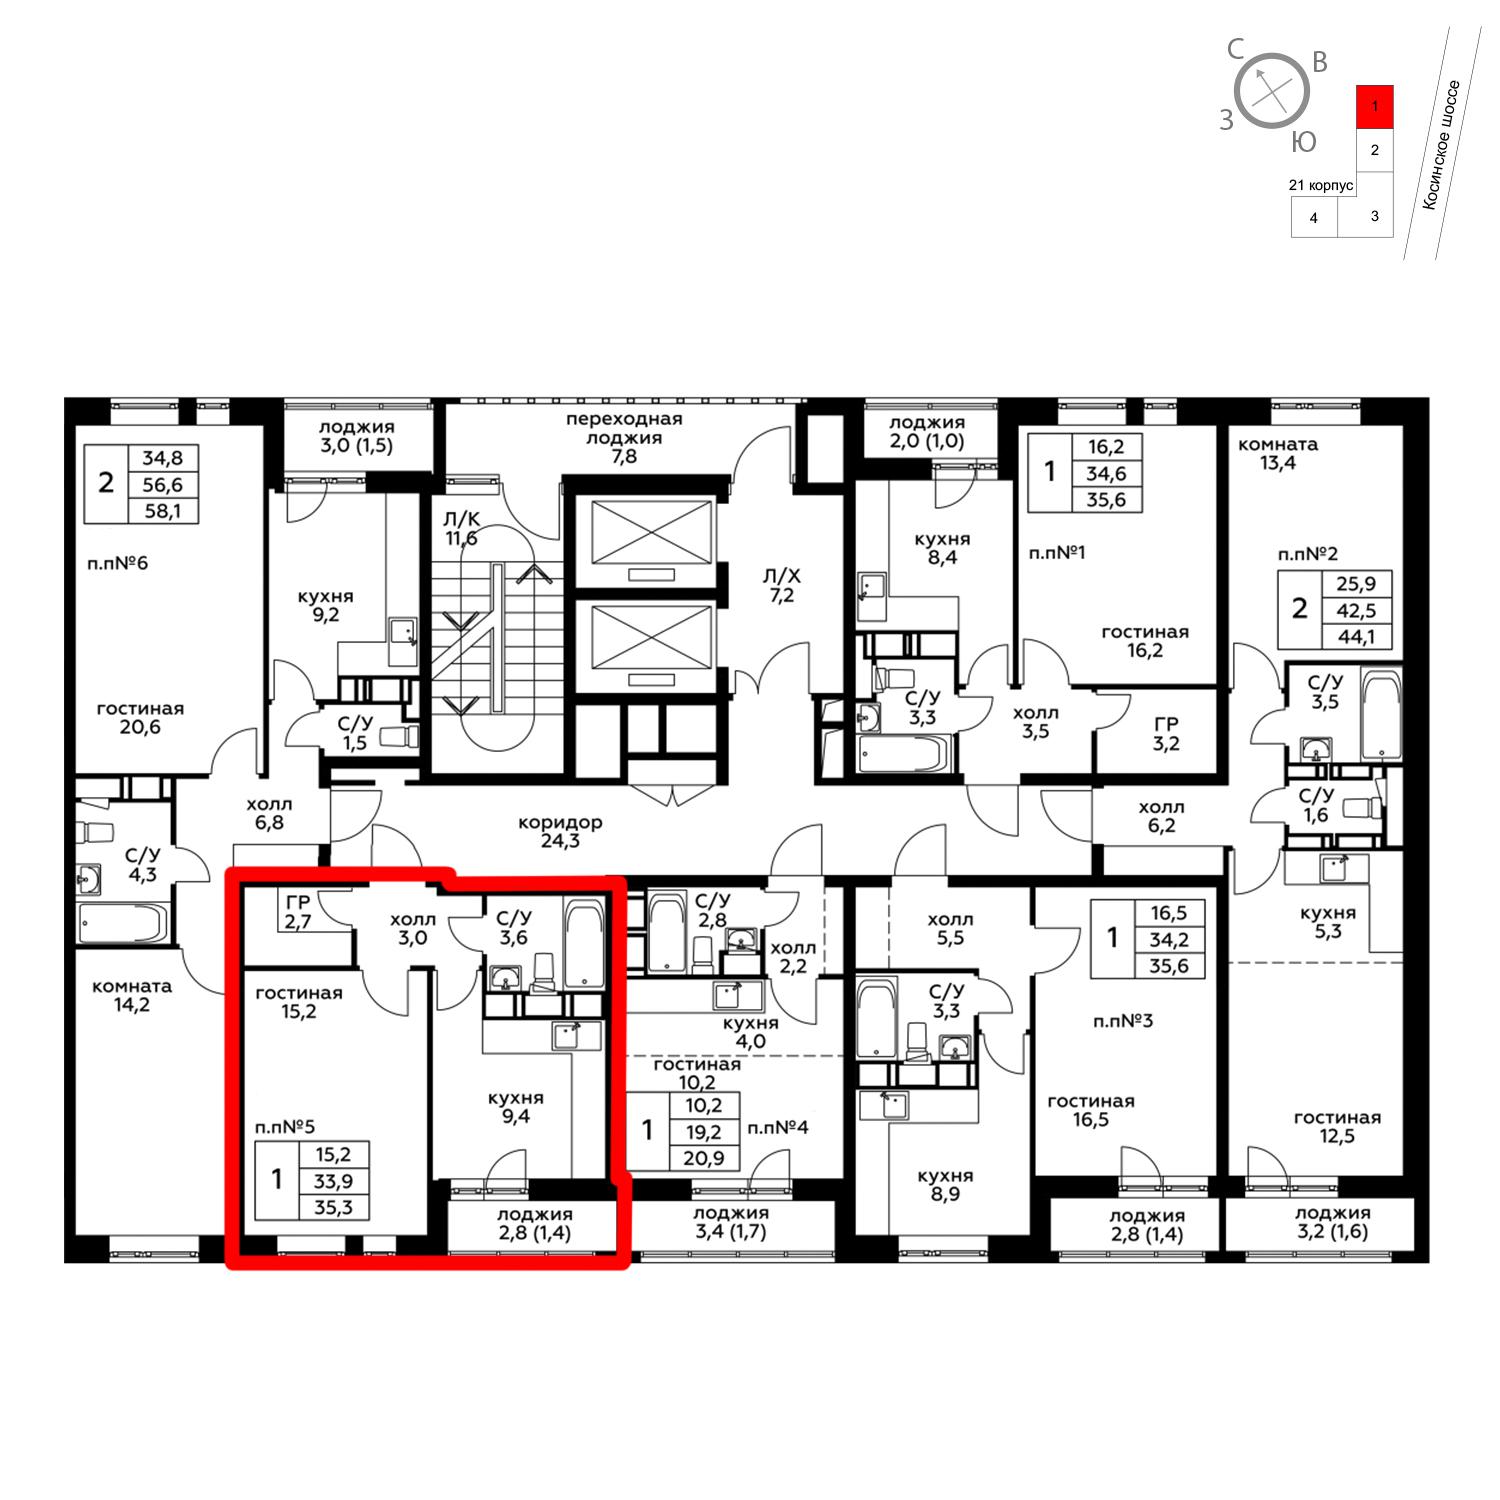 Продаётся 1-комнатная квартира в новостройке 35.3 кв.м. этаж 11/20 за 4 405 440 руб 